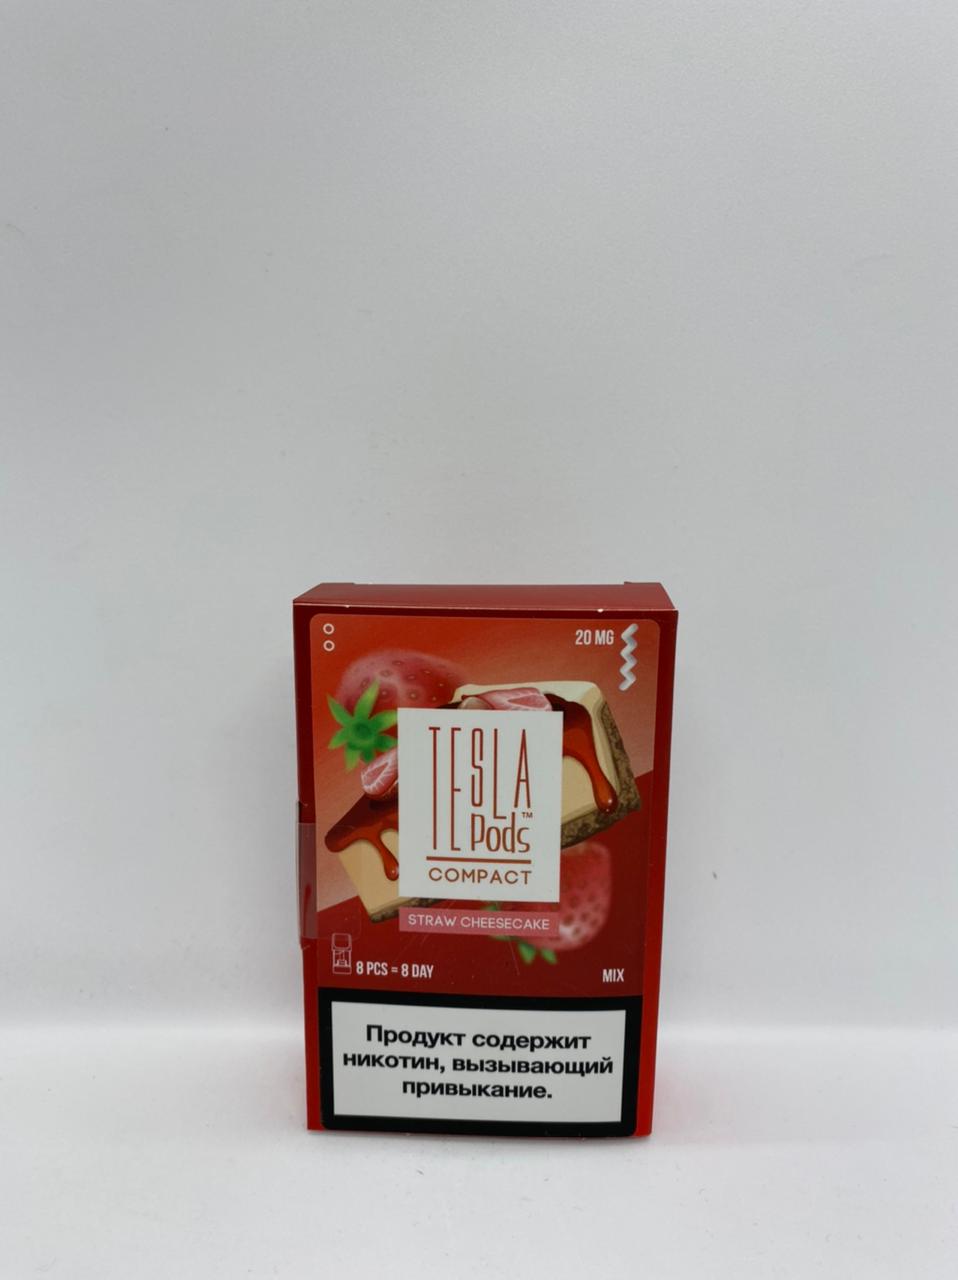 Набор TESLA pods Картридж Straw chese cake 2% (8 картриджей) compact для Logic с доставкой по Москве и России